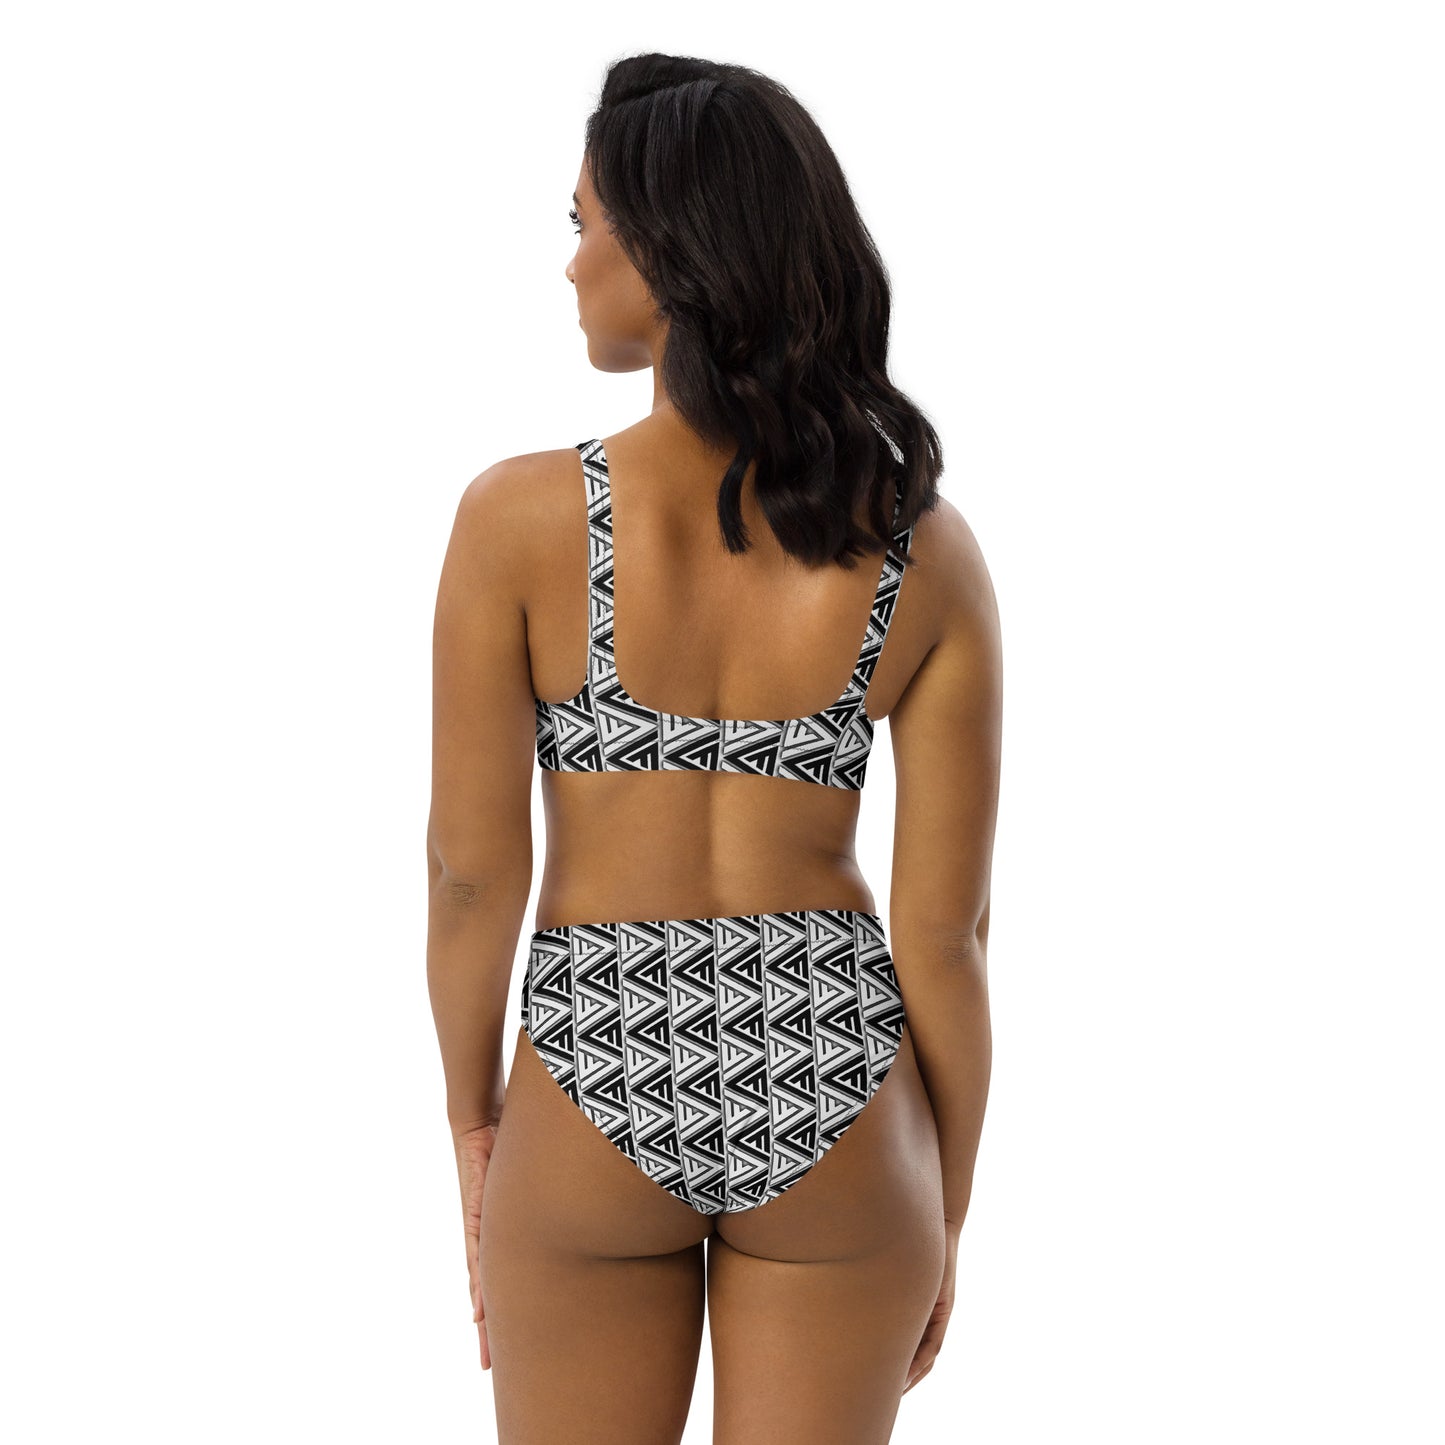 FV Recycled Zebra high-waisted bikini